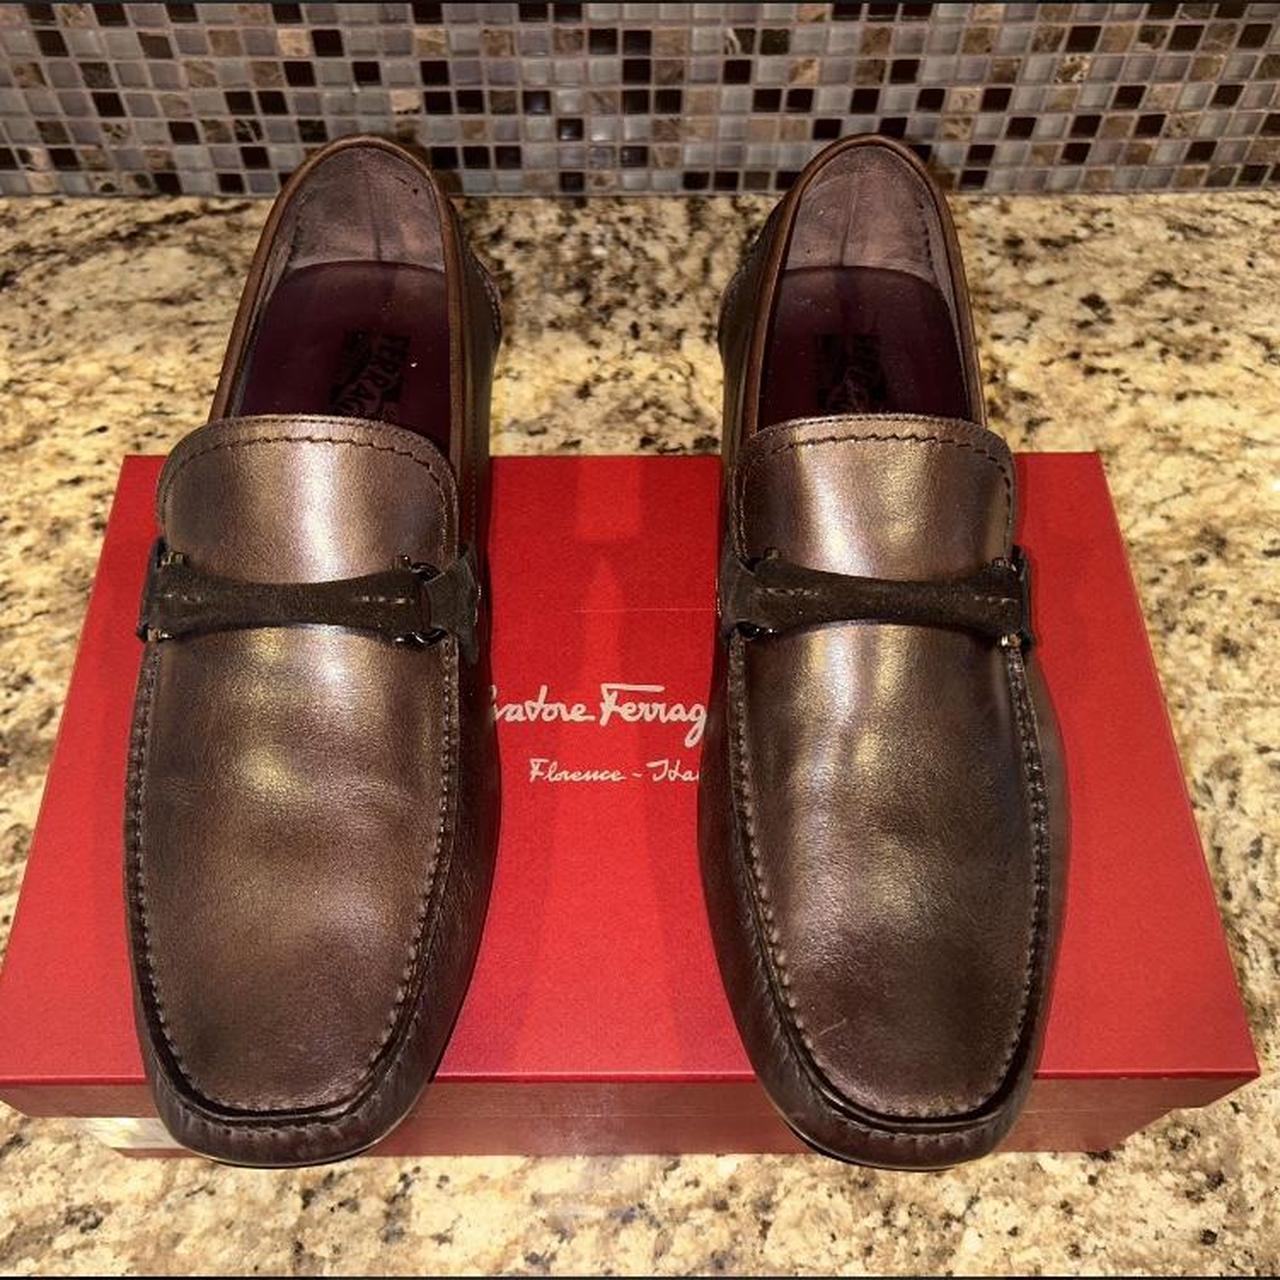 Salvatore Ferragamo men’s loafers in hickory brown...